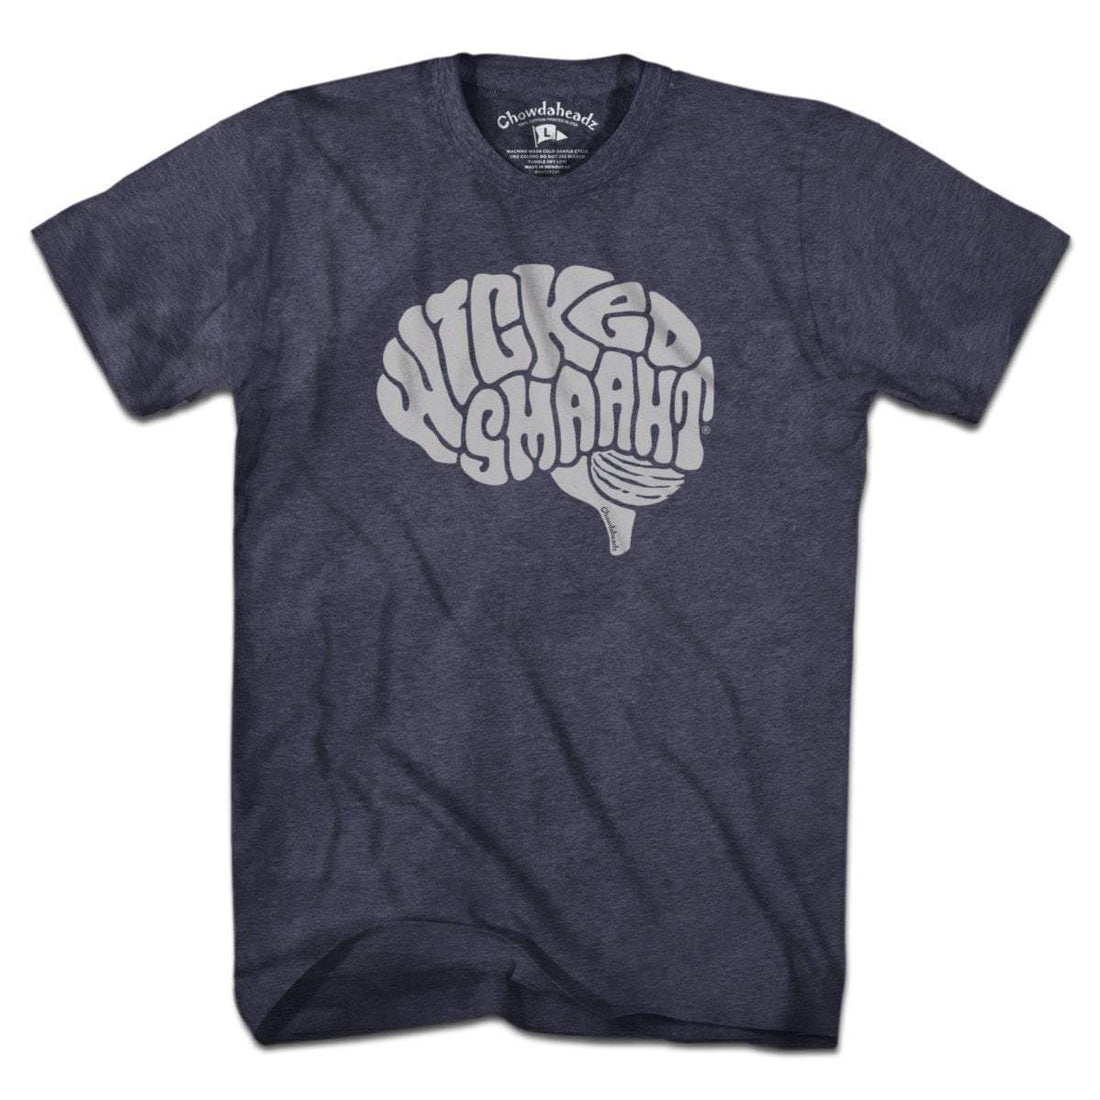 Wicked Smaaht Brain T-Shirt - Chowdaheadz